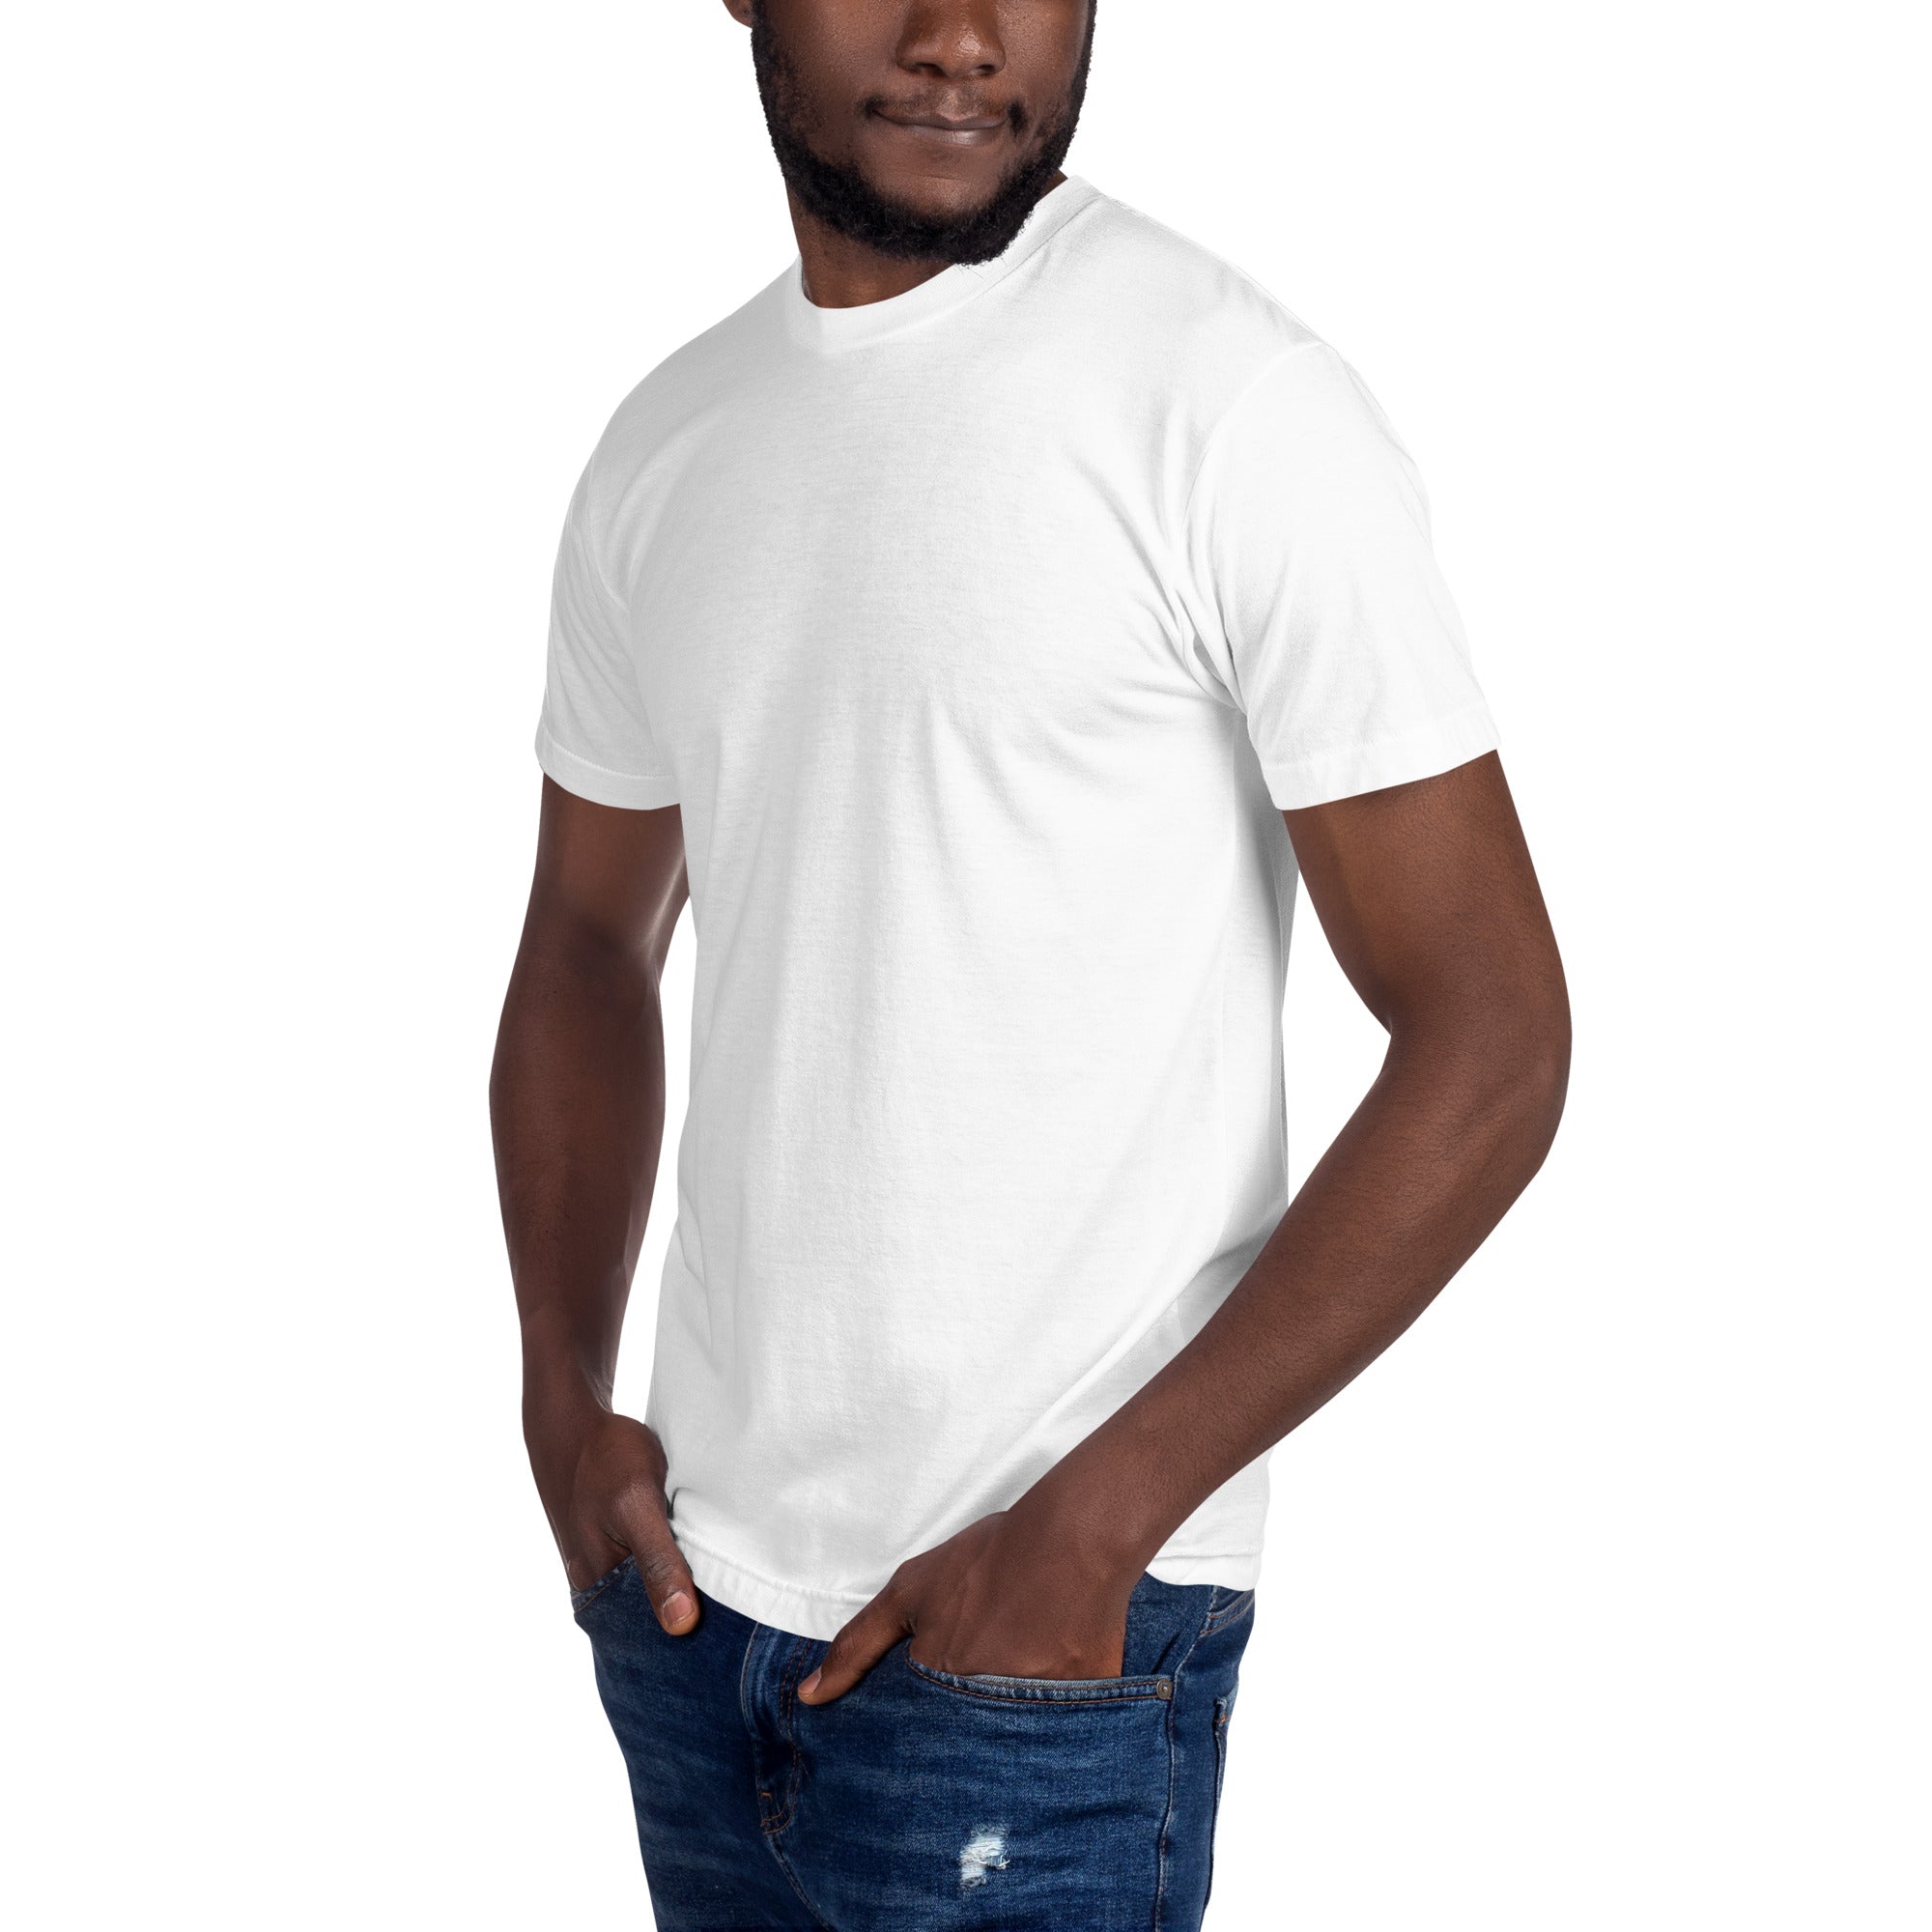 Camiseta unisex con cuello redondo